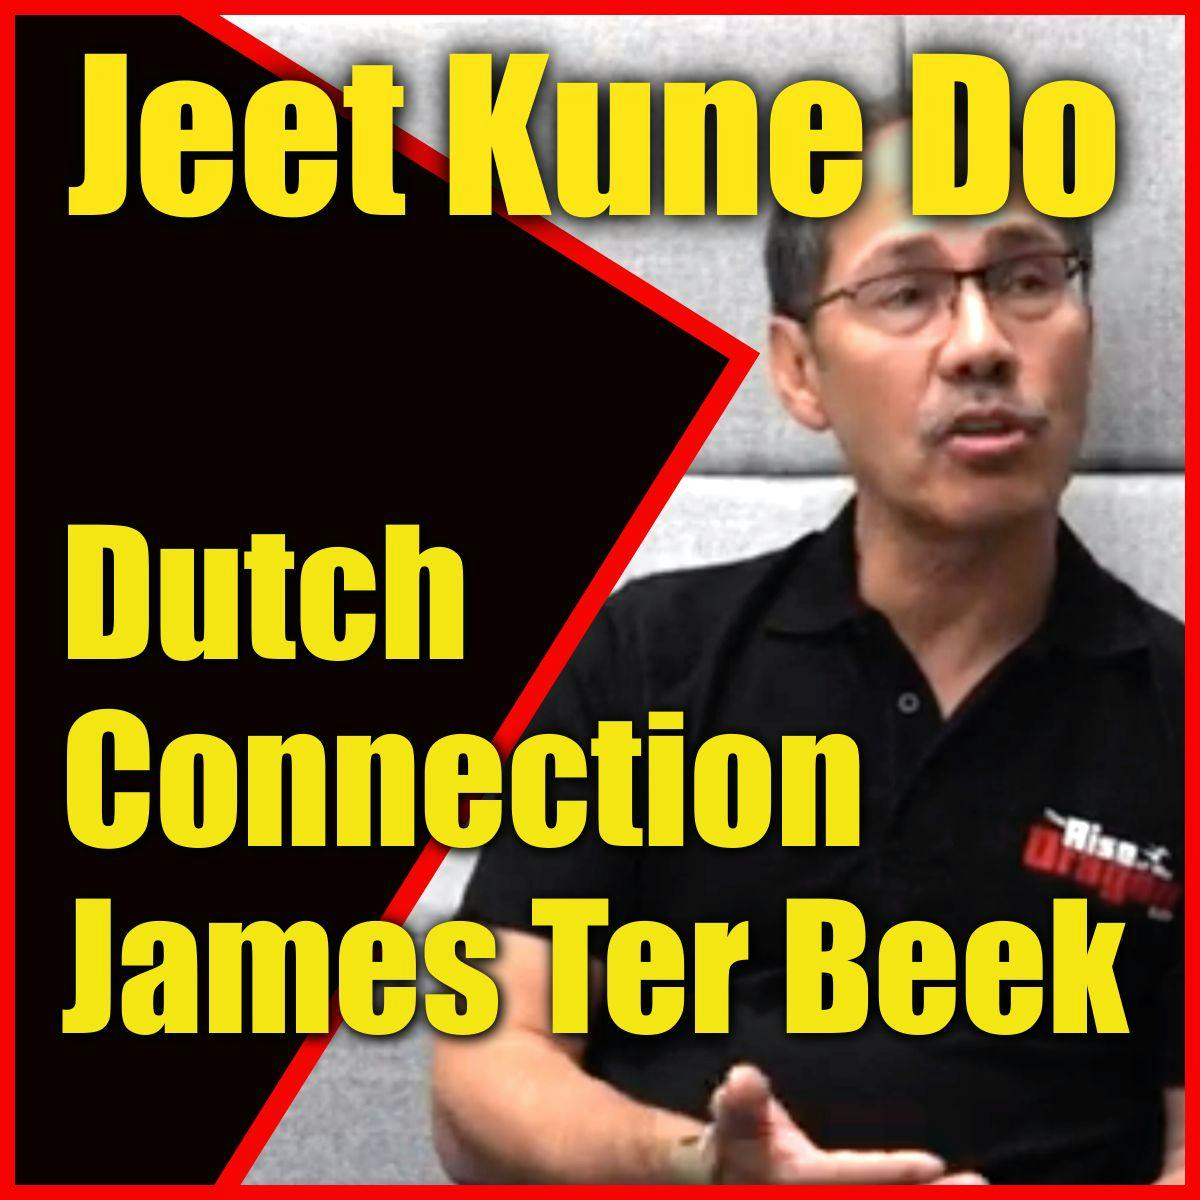 Jeet Kune Do Dutch Connection James Ter Beek